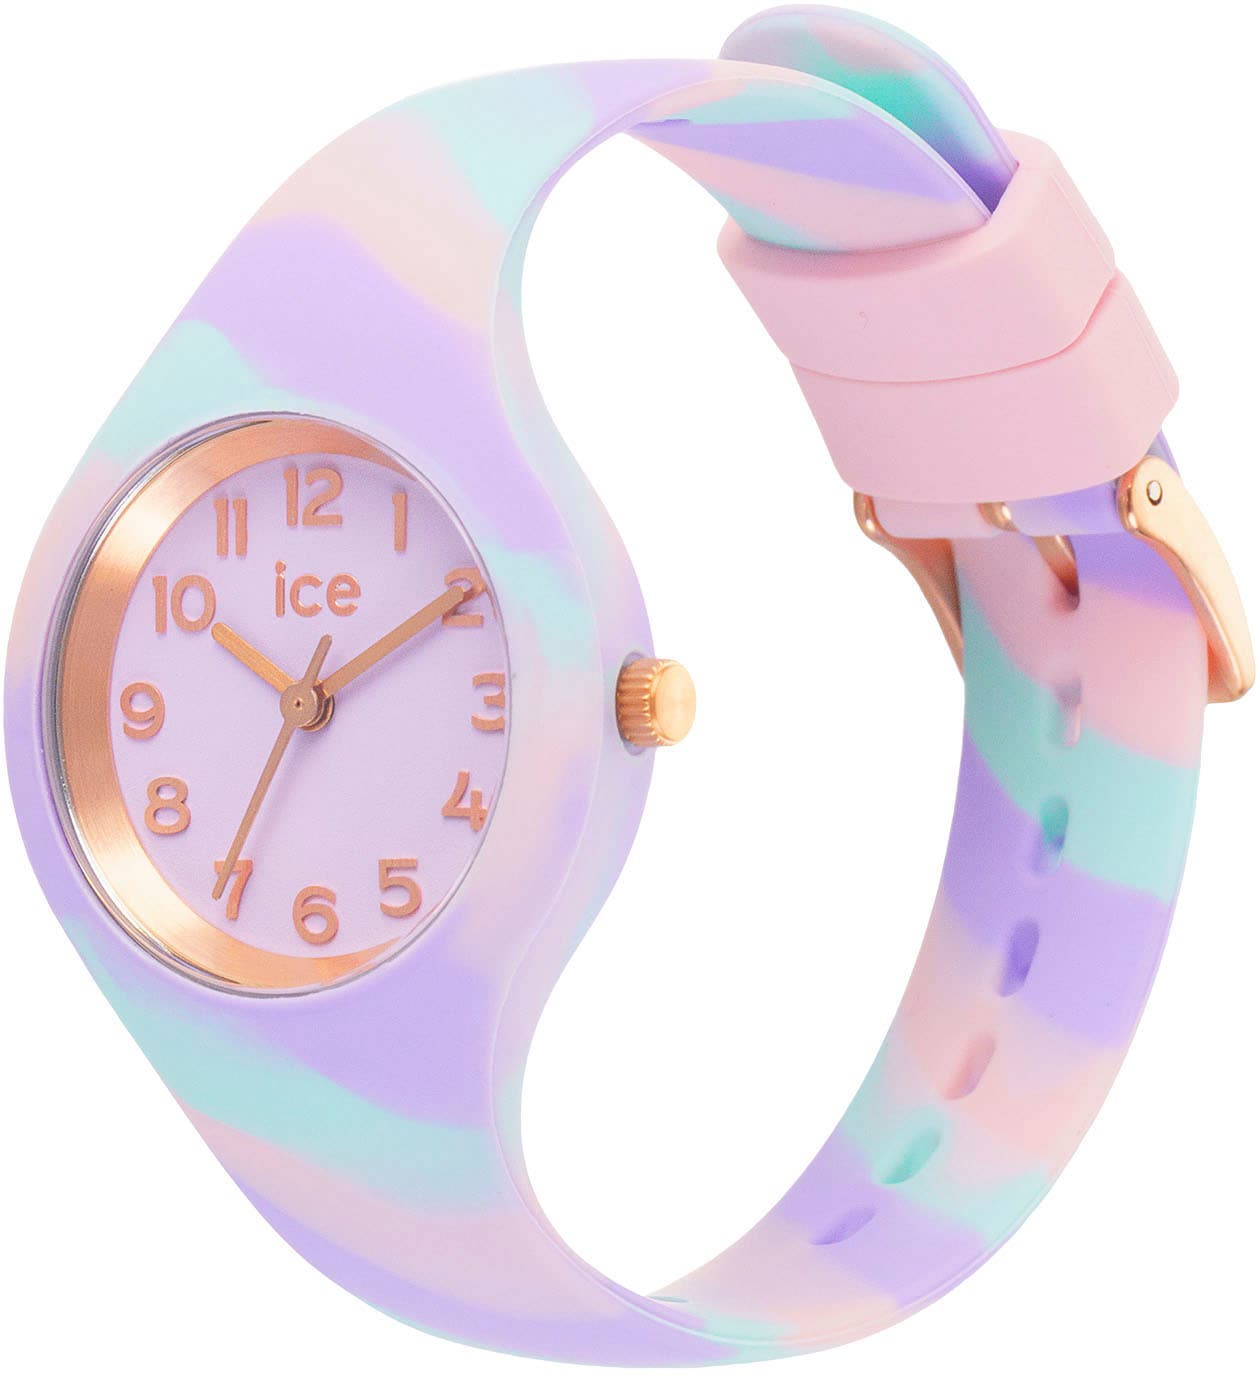 Dies ist eine Liste von ice-watch Quarzuhr »ICE tie and - 021010«, ideal Sweet OTTO - online dye Geschenk als auch bei Extra-Small lilac - 3H